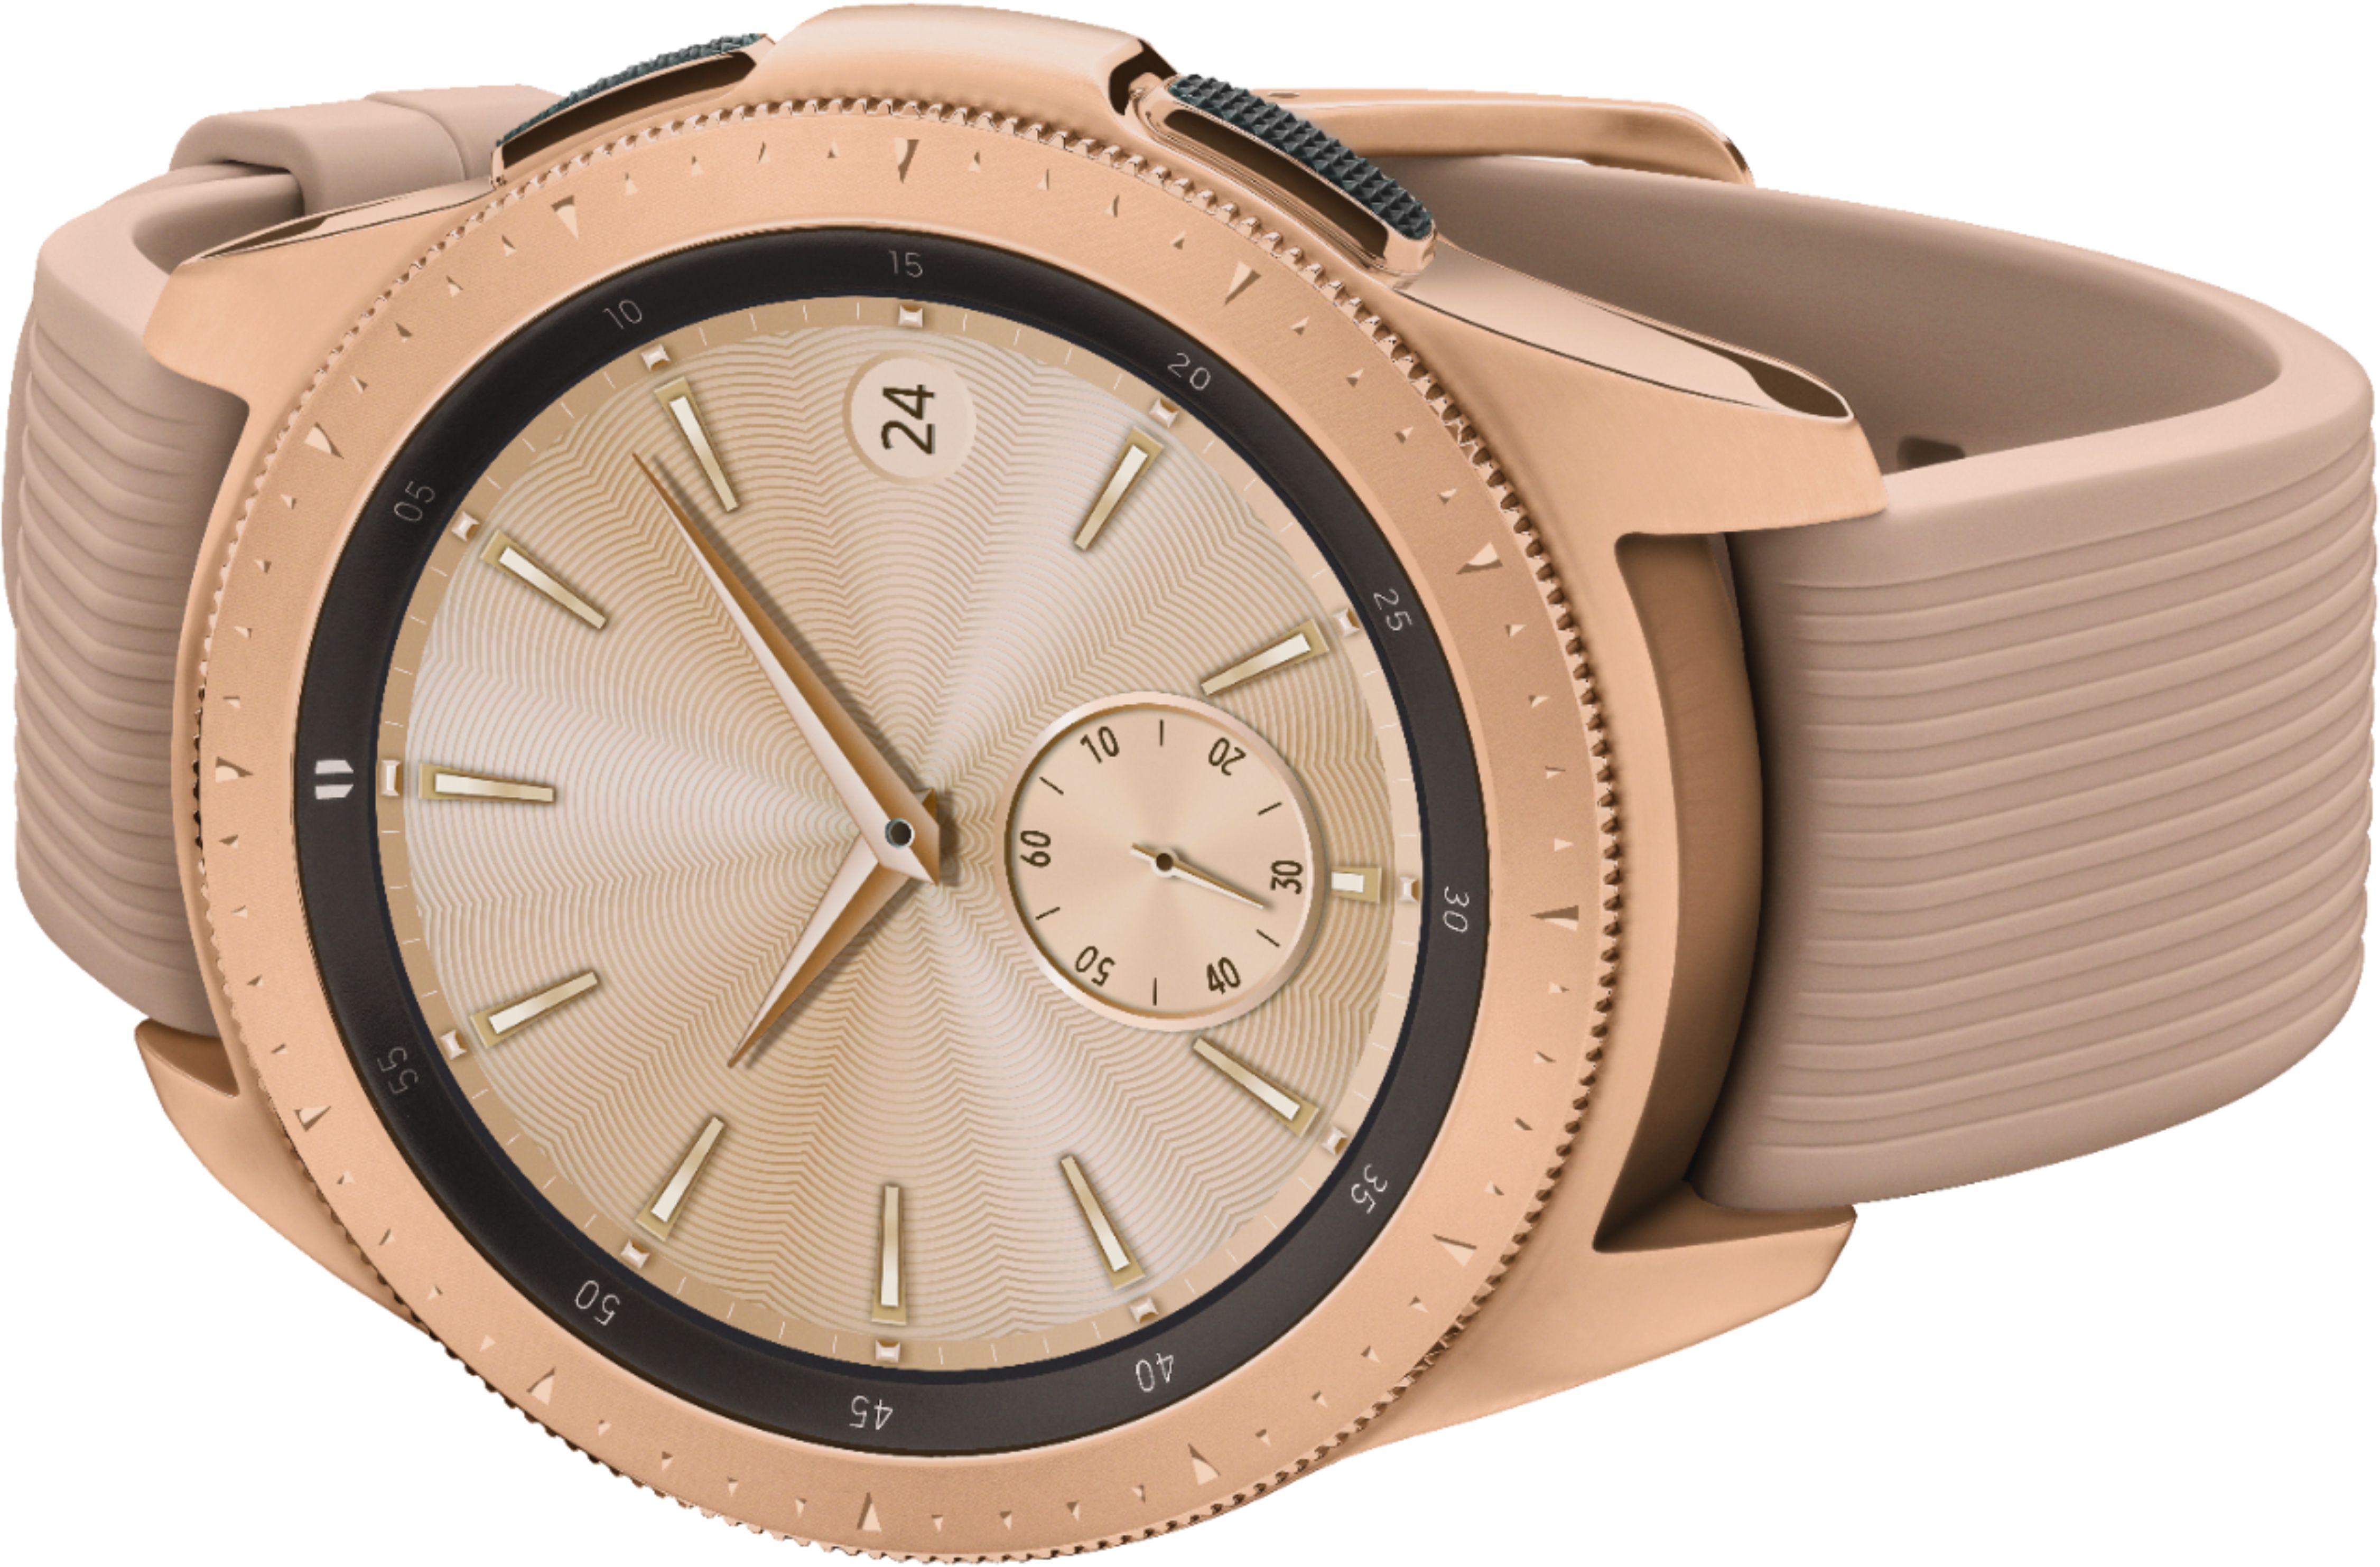 Best Buy Samsung Galaxy Watch Smartwatch 42mm Stainless Steel Rose Gold Sm R810nzdaxar